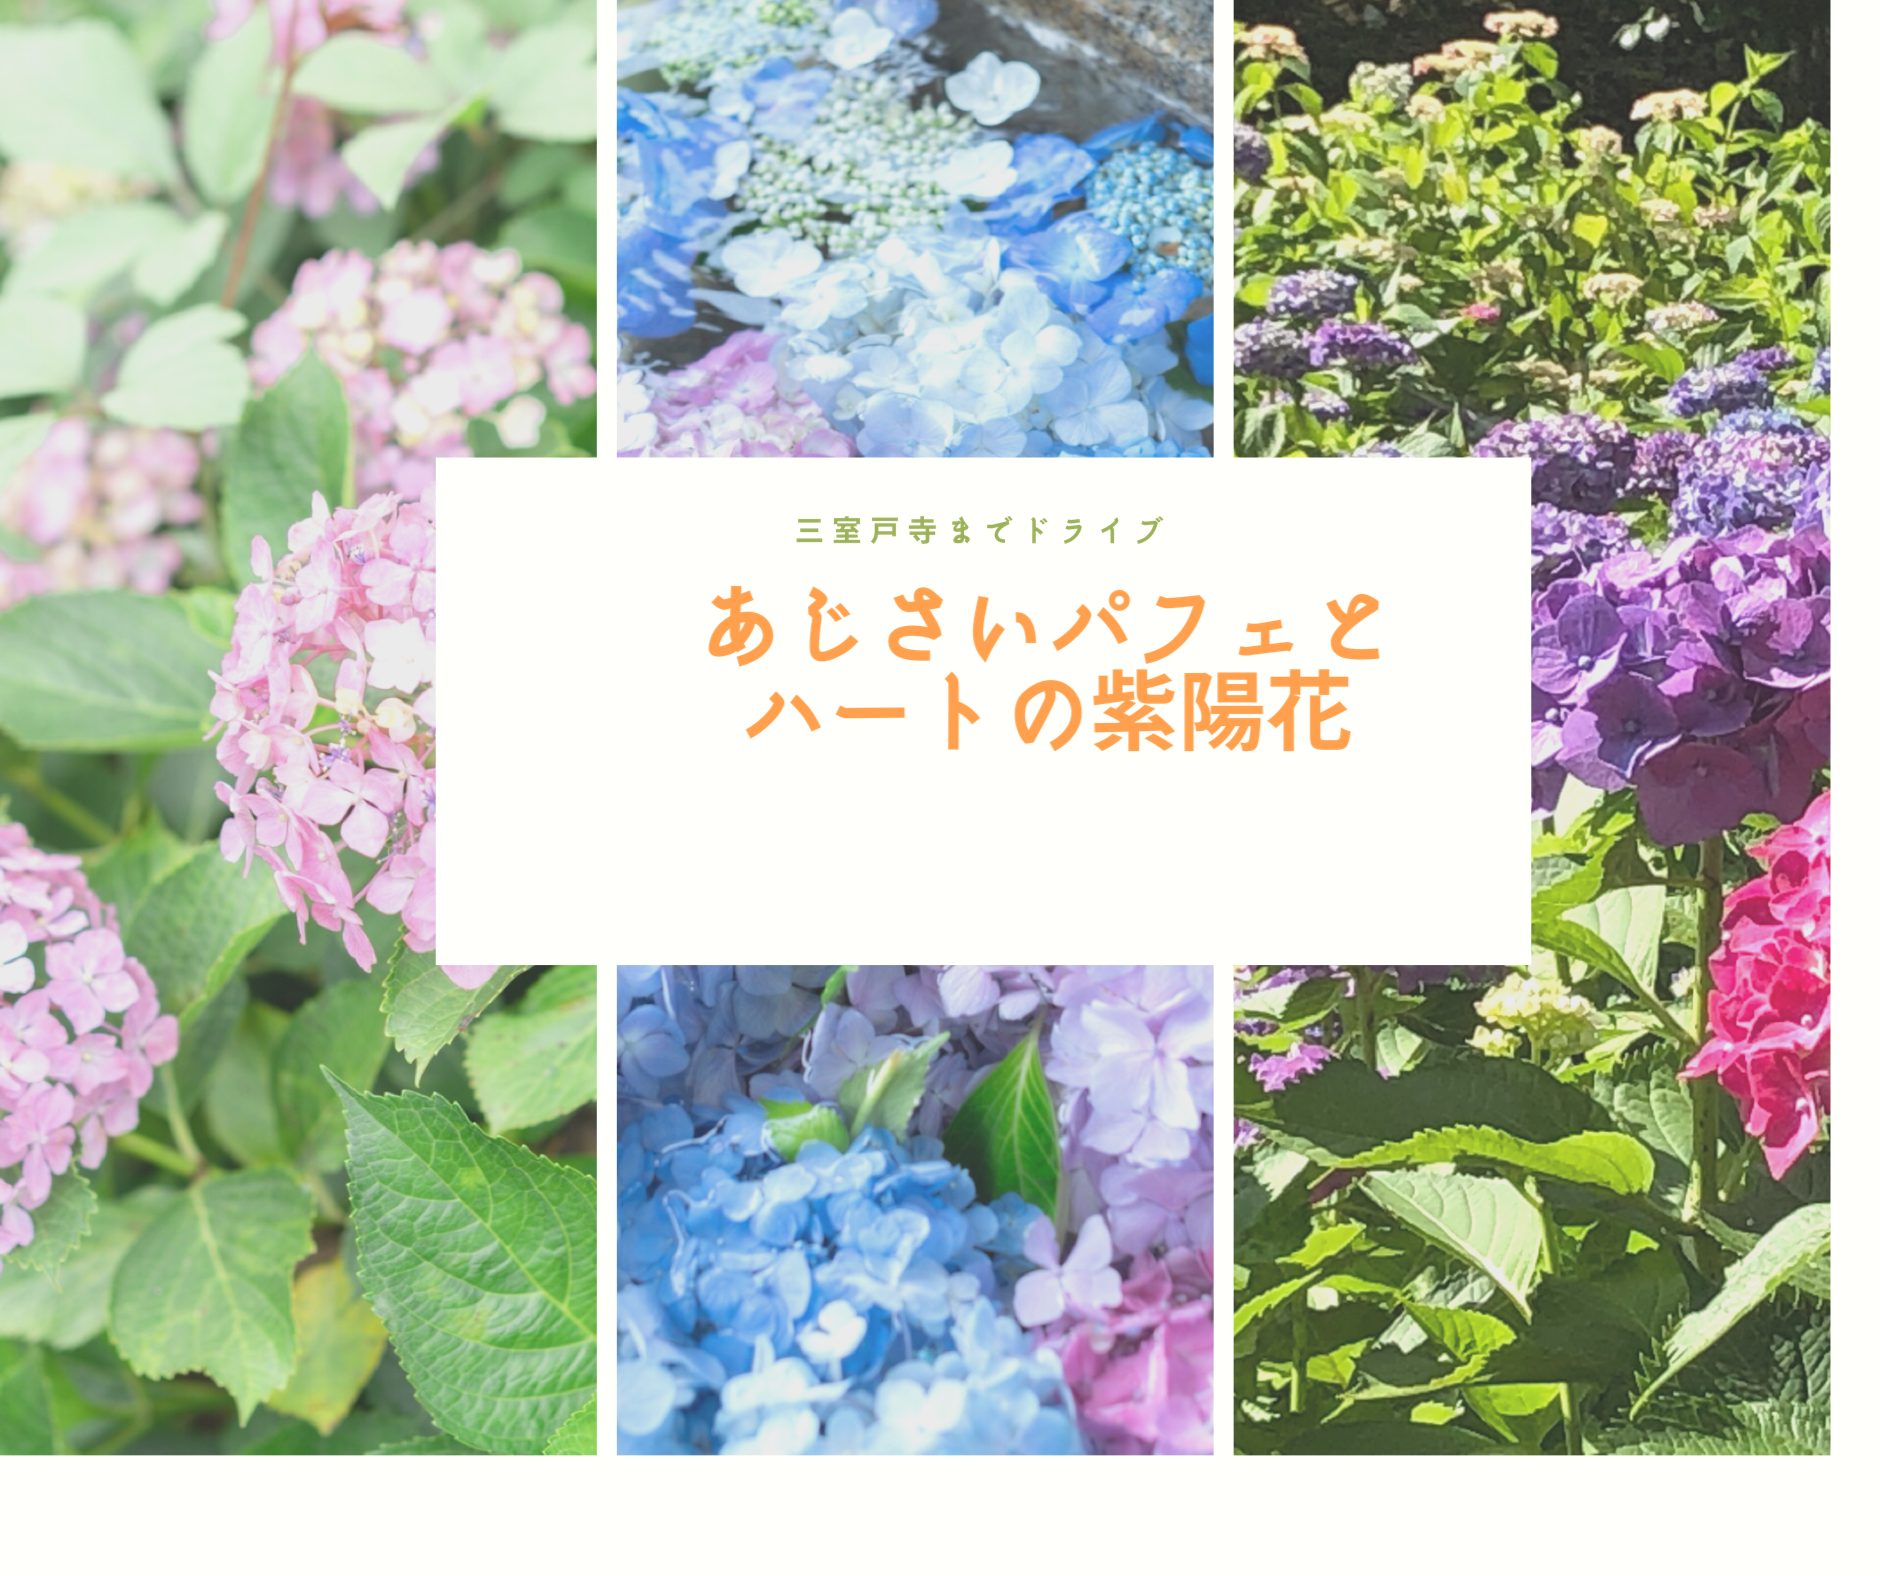 三室戸寺 ハートの紫陽花で恋愛成就 三室堂へお参りしてあじさいパフェを食べる 京都旅日記 旅するブログ